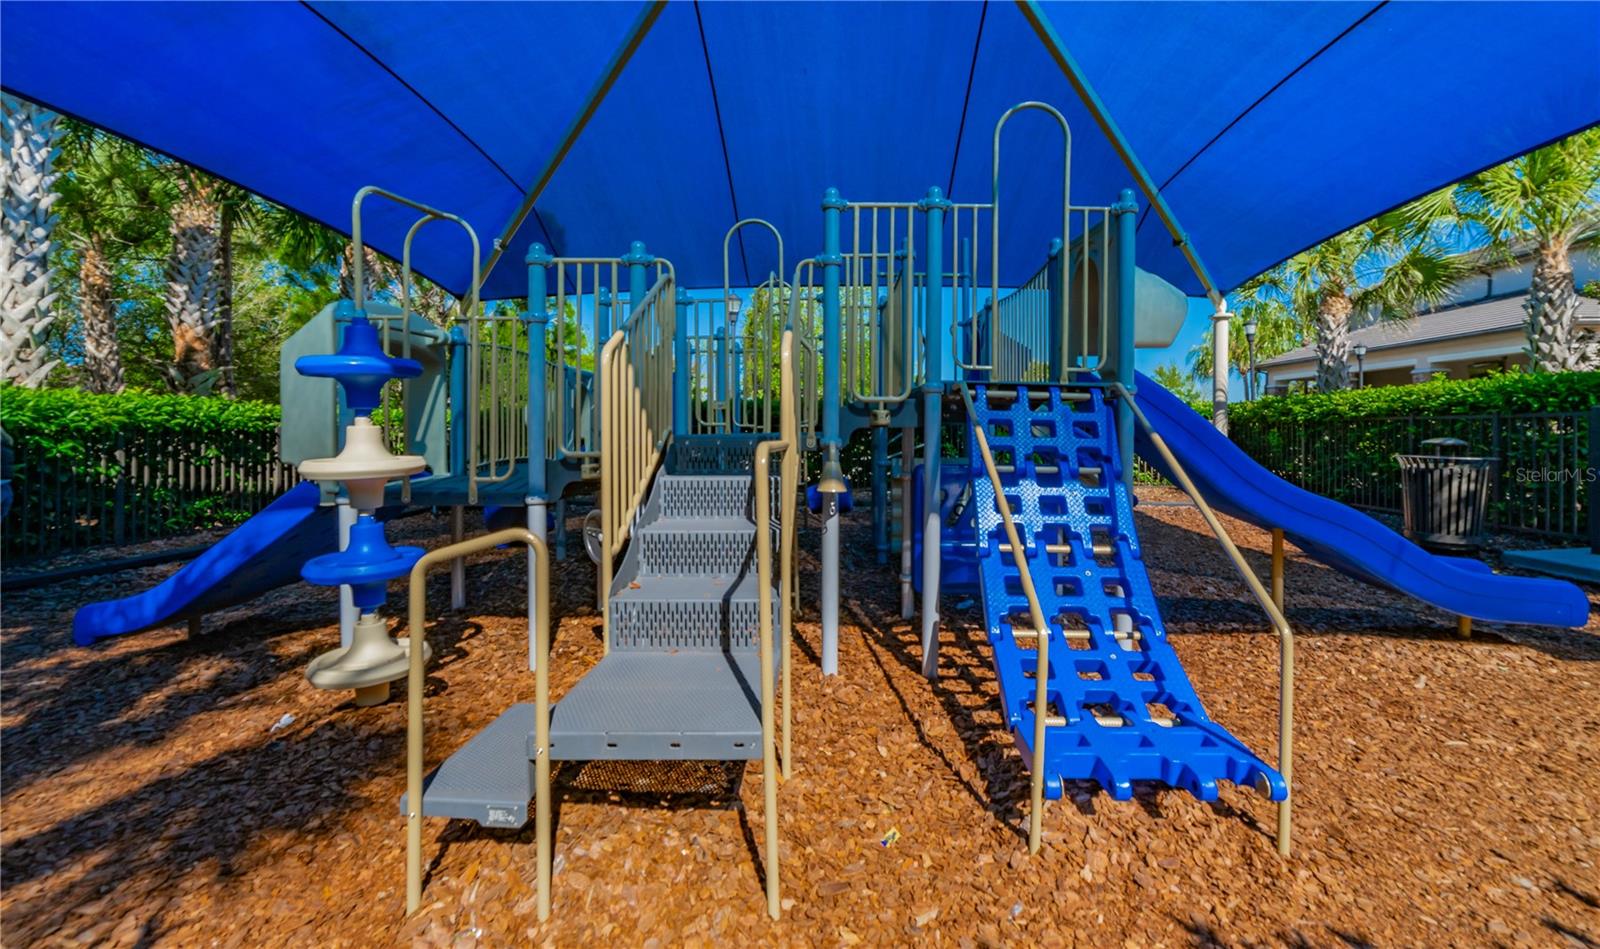 Covered Playground